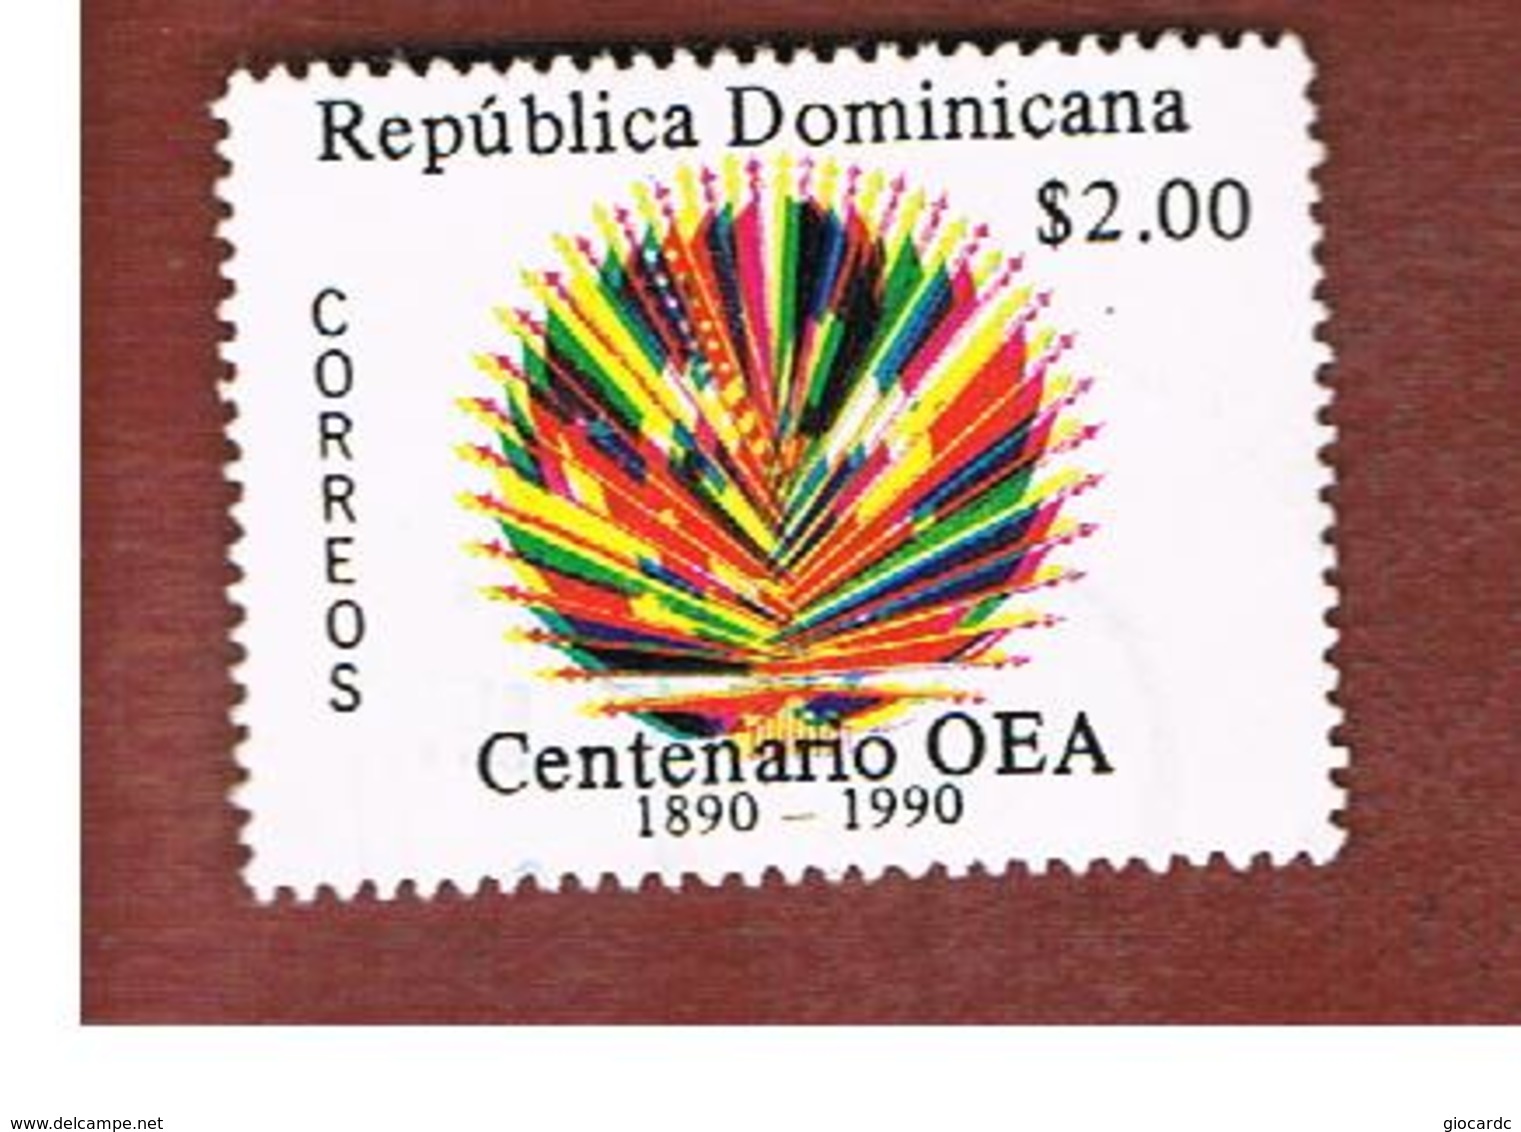 REPUBBLICA DOMENICANA (DOMINICAN REPUBLIC)  - SG 1776  -  1990  AMERICAN STATES ORGANITATION OSA (OEA)     - USED - Dominican Republic